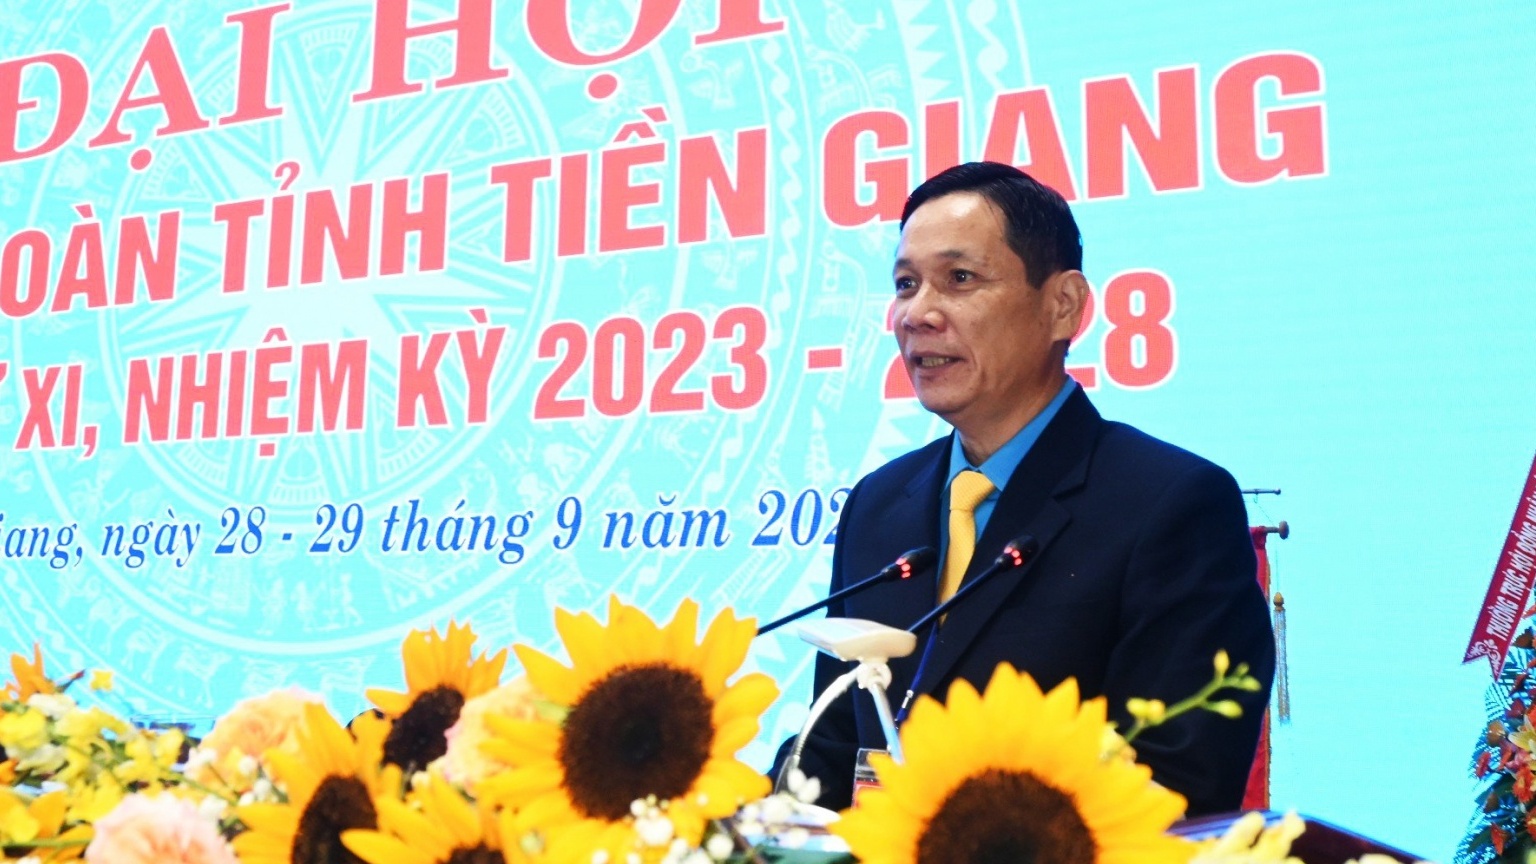 Đồng chí Lê Minh Hùng tái đắc cử Chủ tịch LĐLĐ tỉnh Tiền Giang